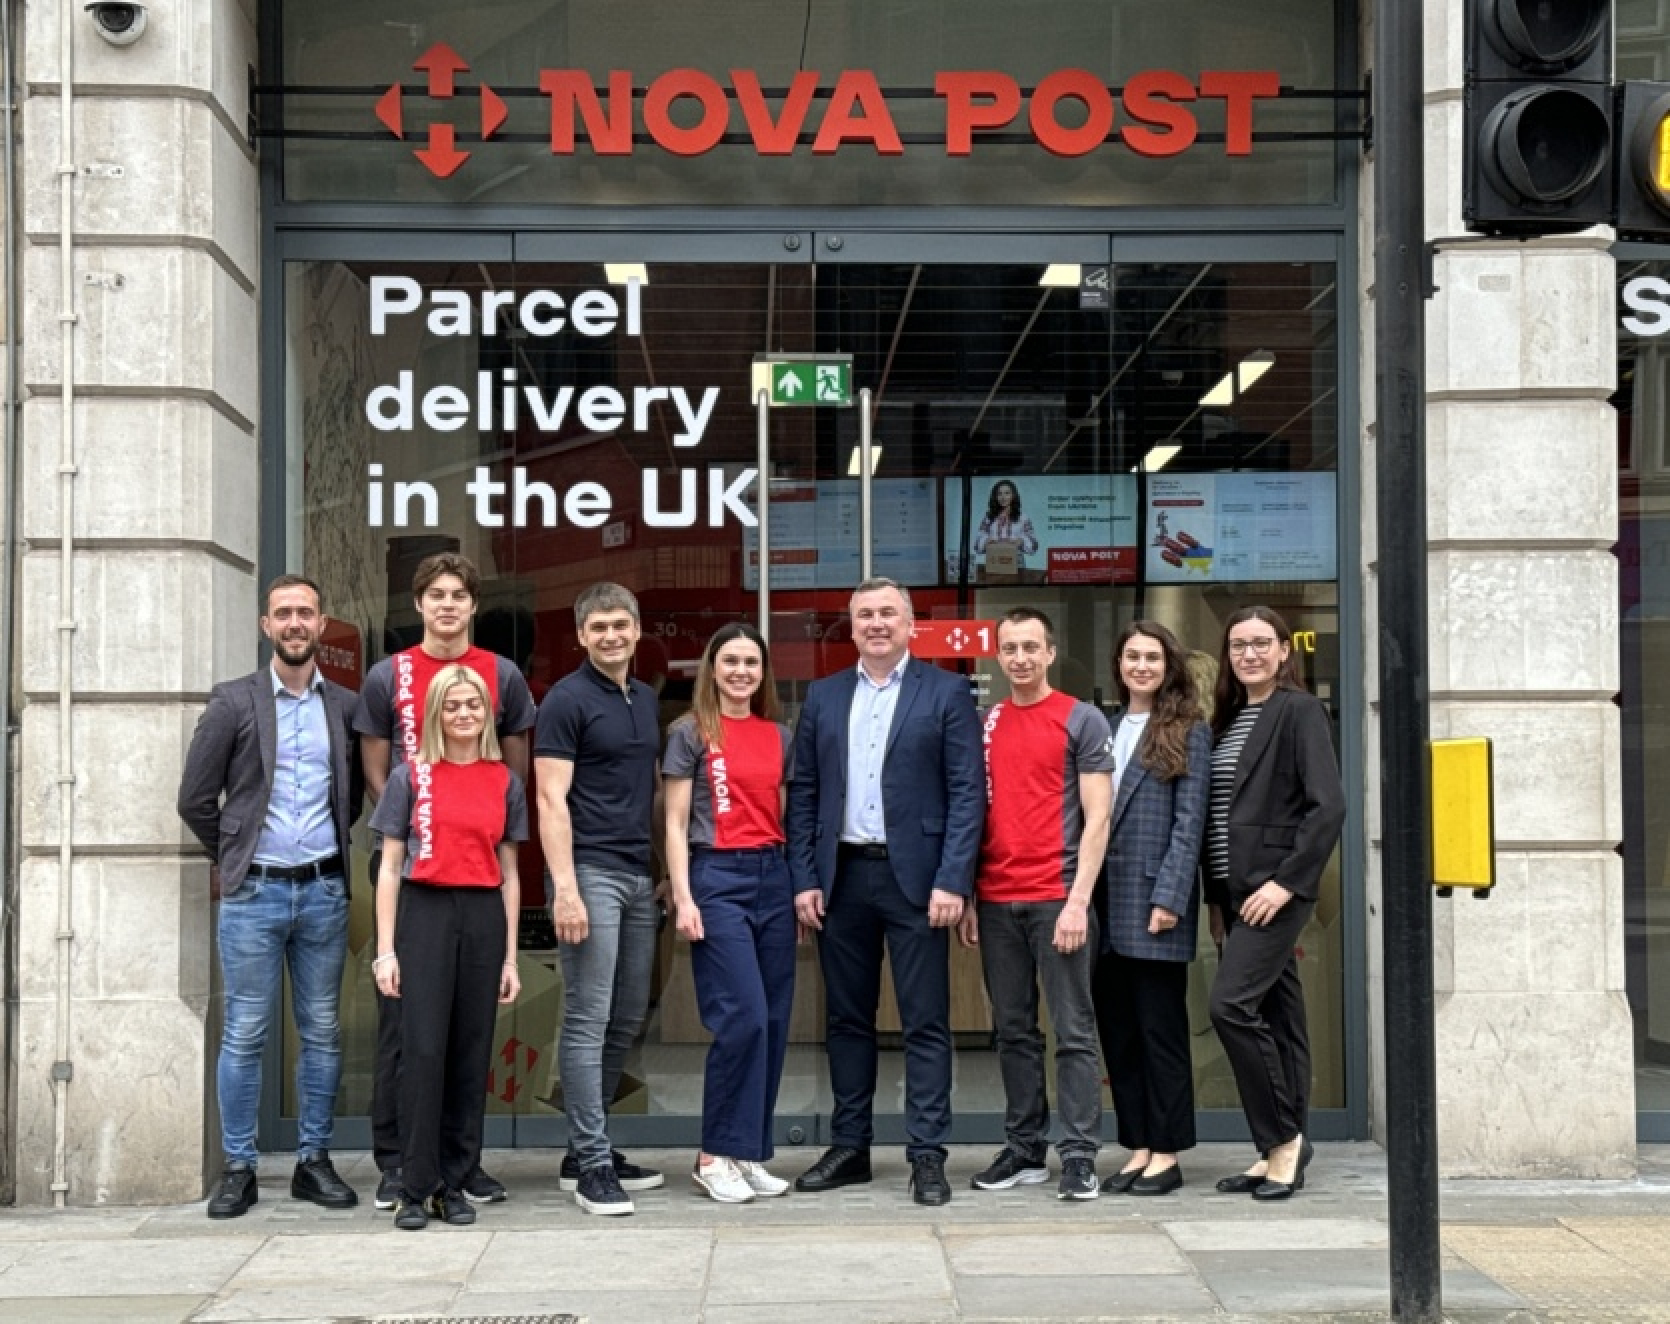 "Novaja Posta" sākusi darbību Apvienotajā Karalistē - atvērtas 2 filiāles un uzsākta kurjerpasta piegāde.